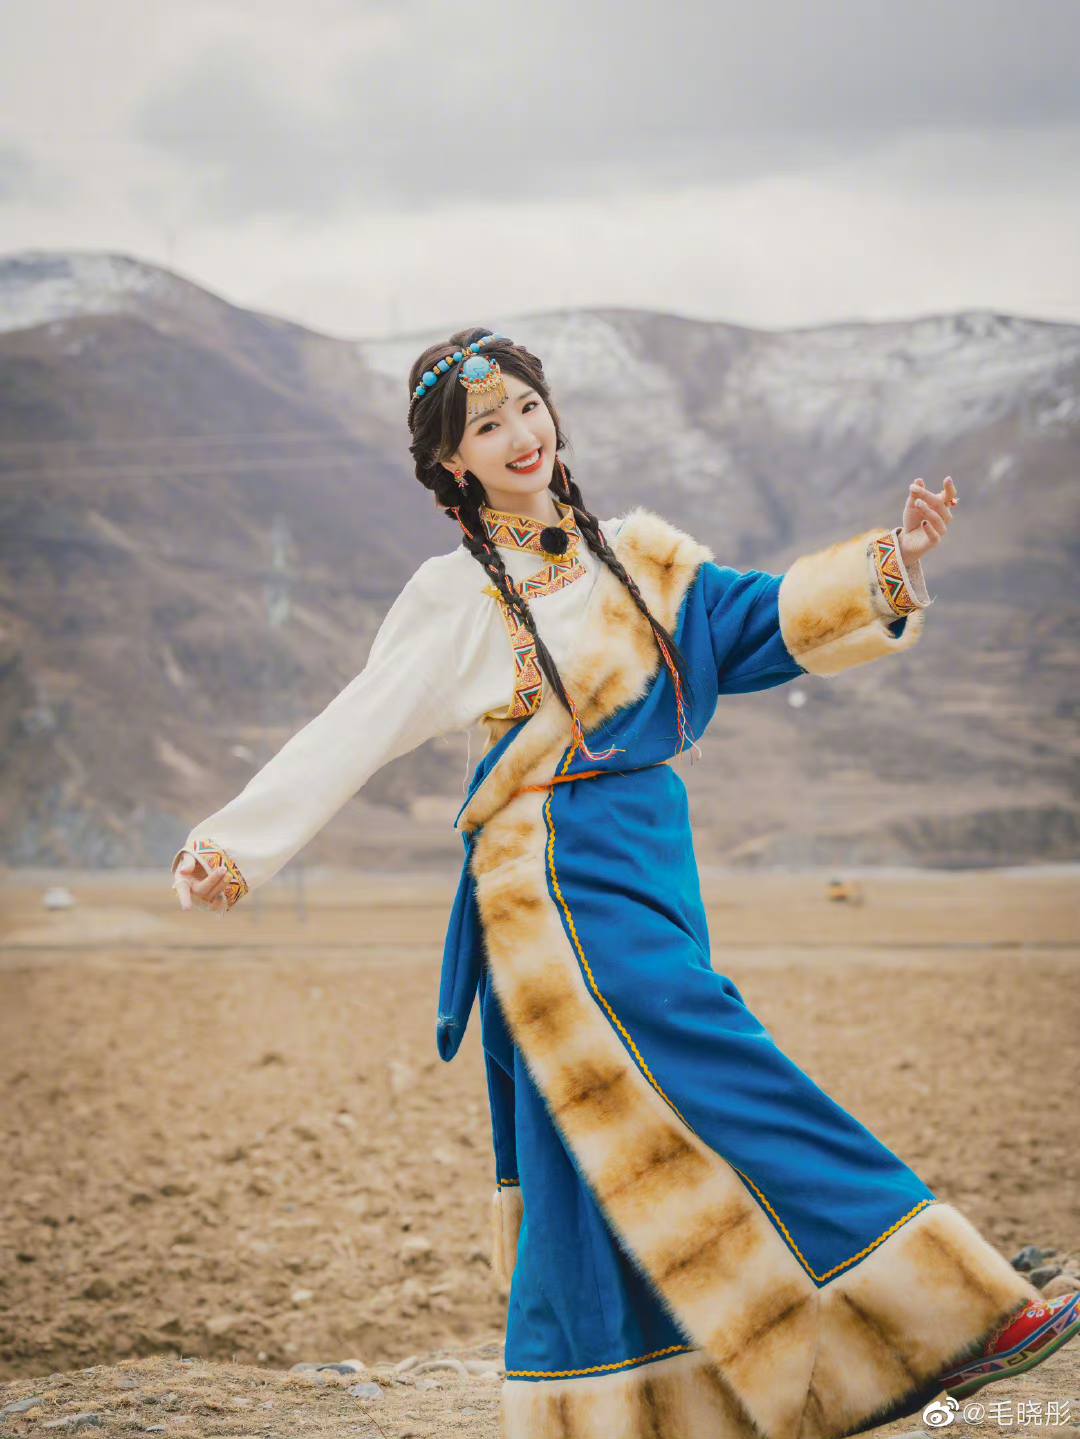 Mê mẩn trước nhan sắc ngọt ngào của Mao Hiểu Đồng khi hóa thân thành công chúa Tây Tạng - Ảnh 5